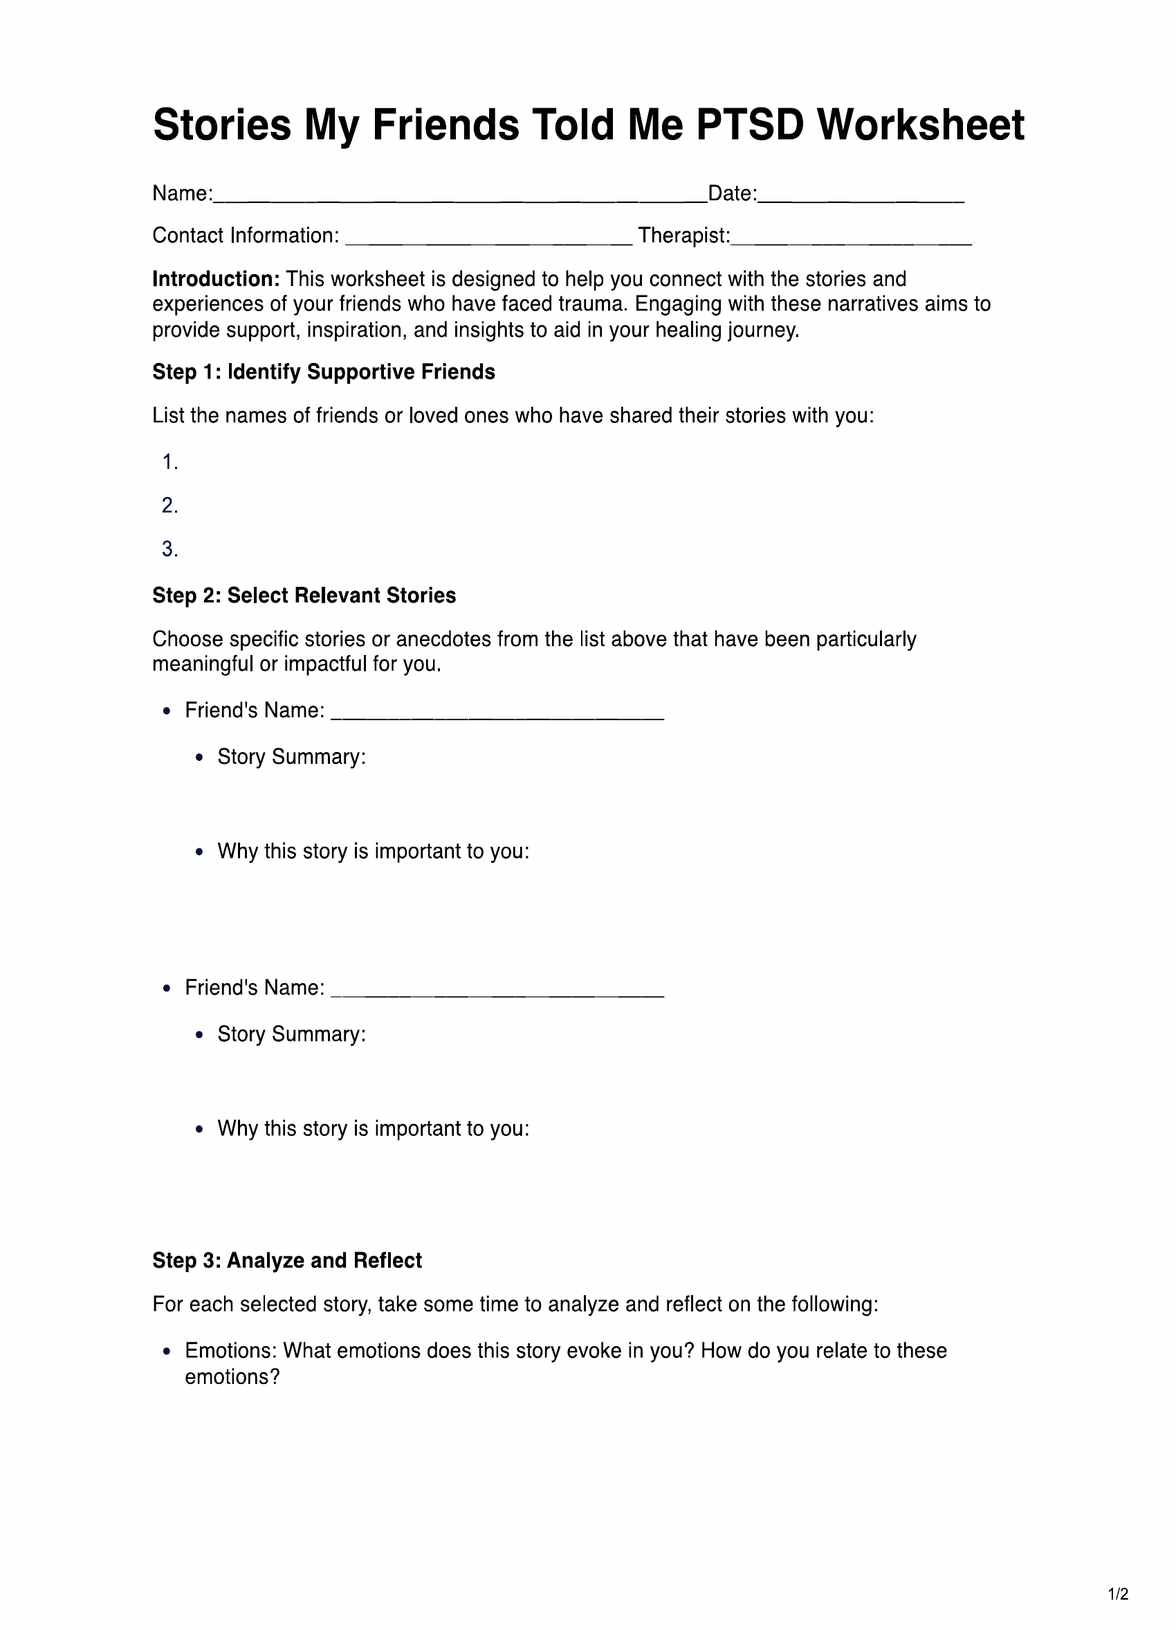 Stories My Friends Told Me PTSD Worksheet PDF Example